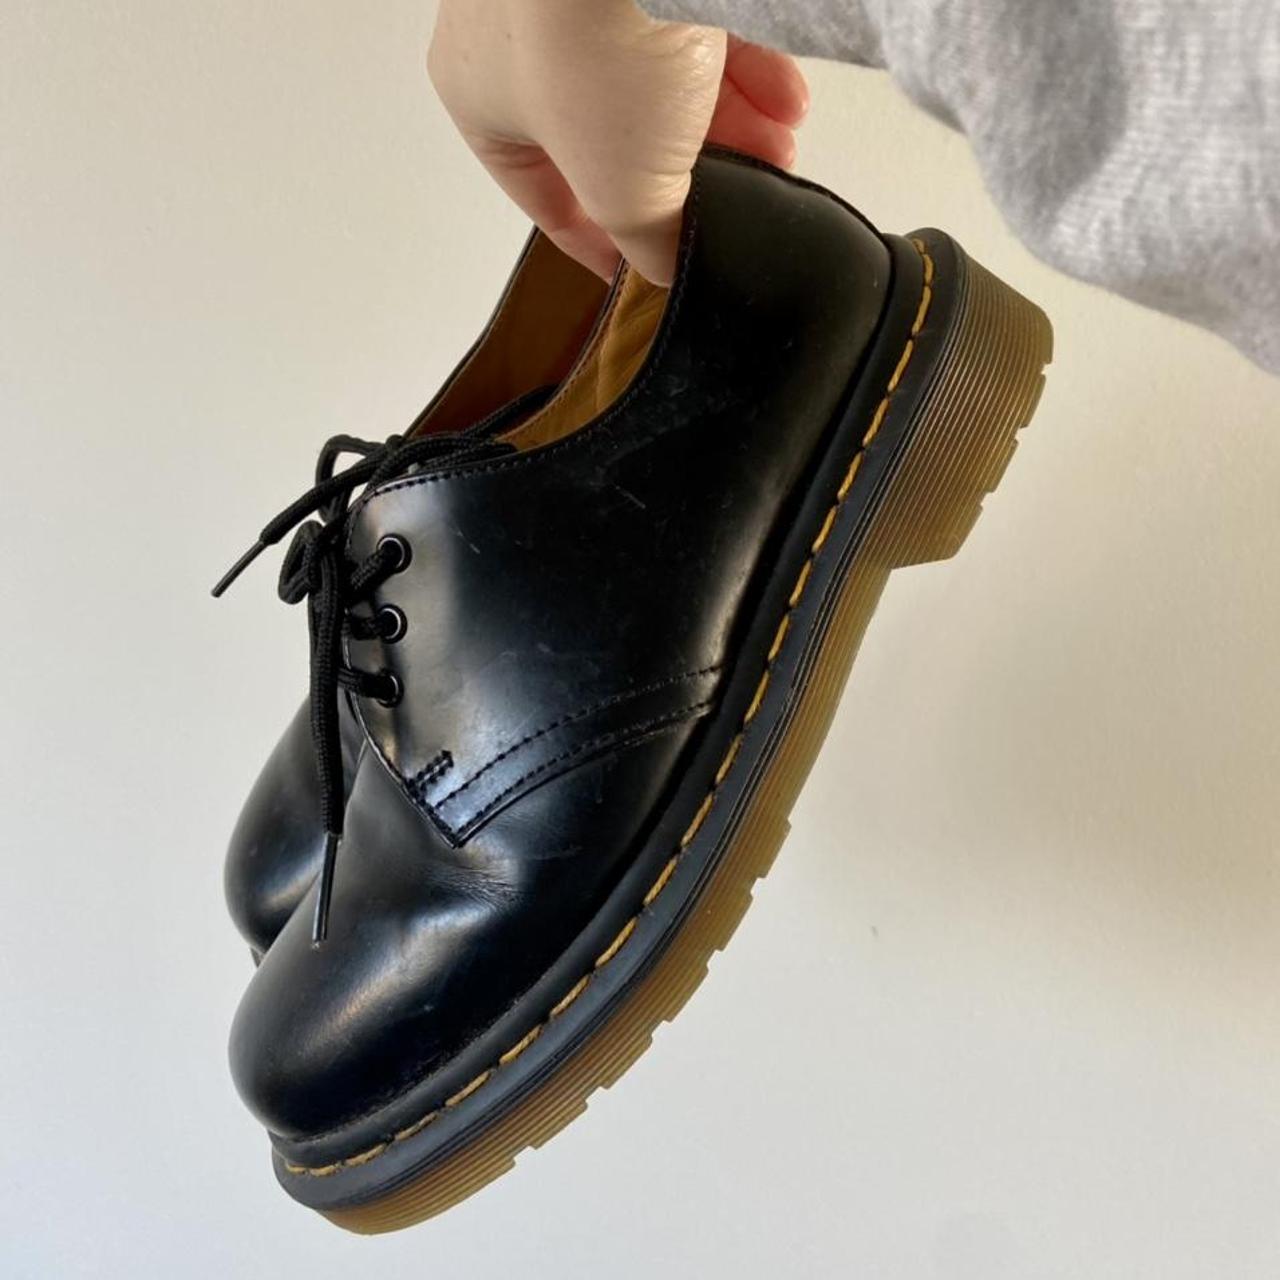 Dr Marten shoes - black leather size 3. Hardly worn,... - Depop